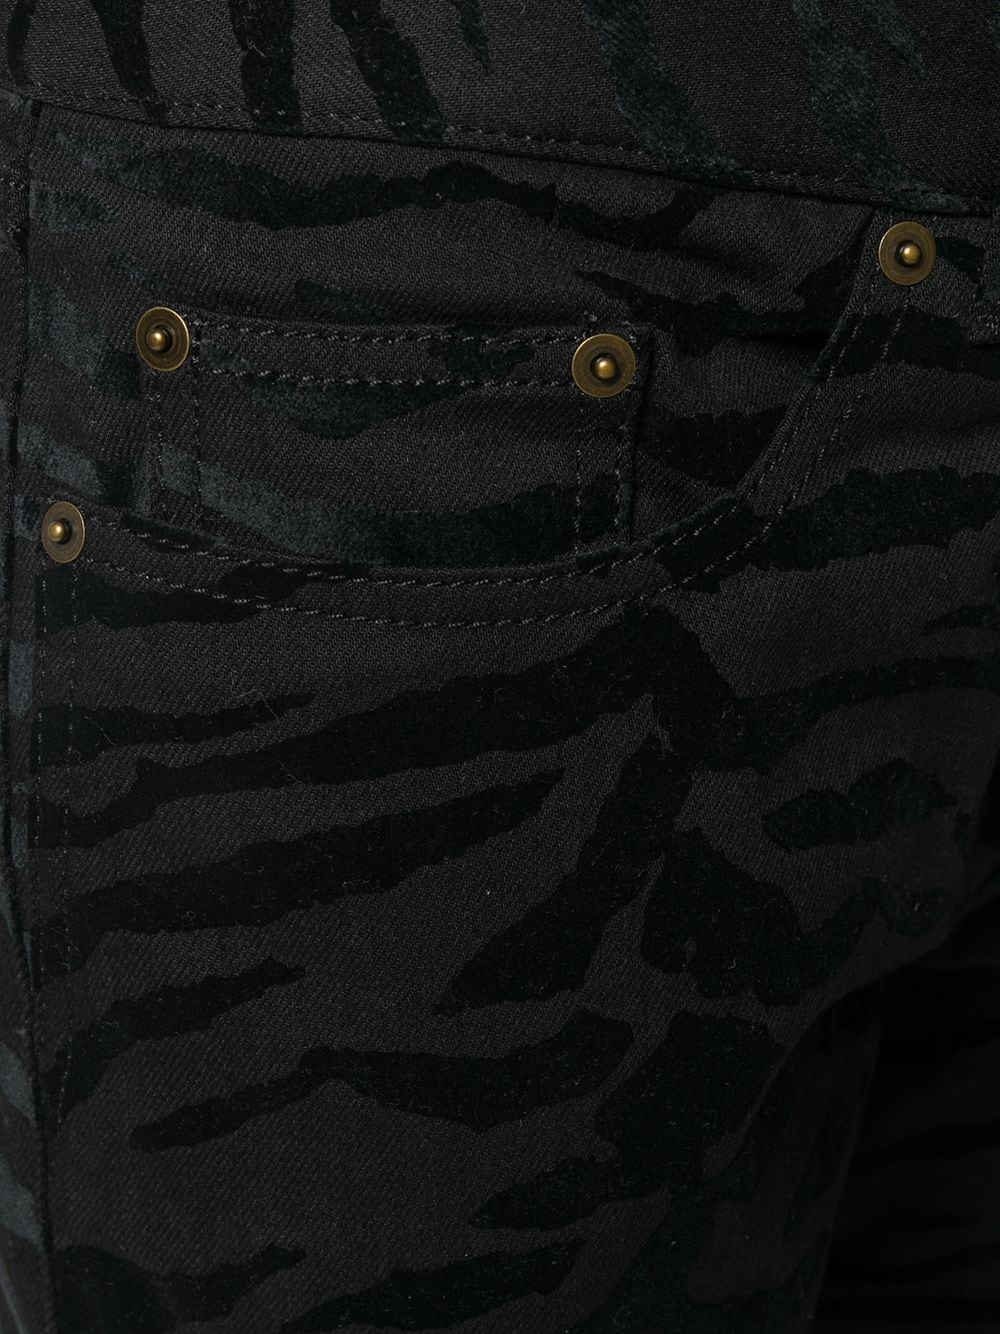 zebra printed skinny jeans - 5